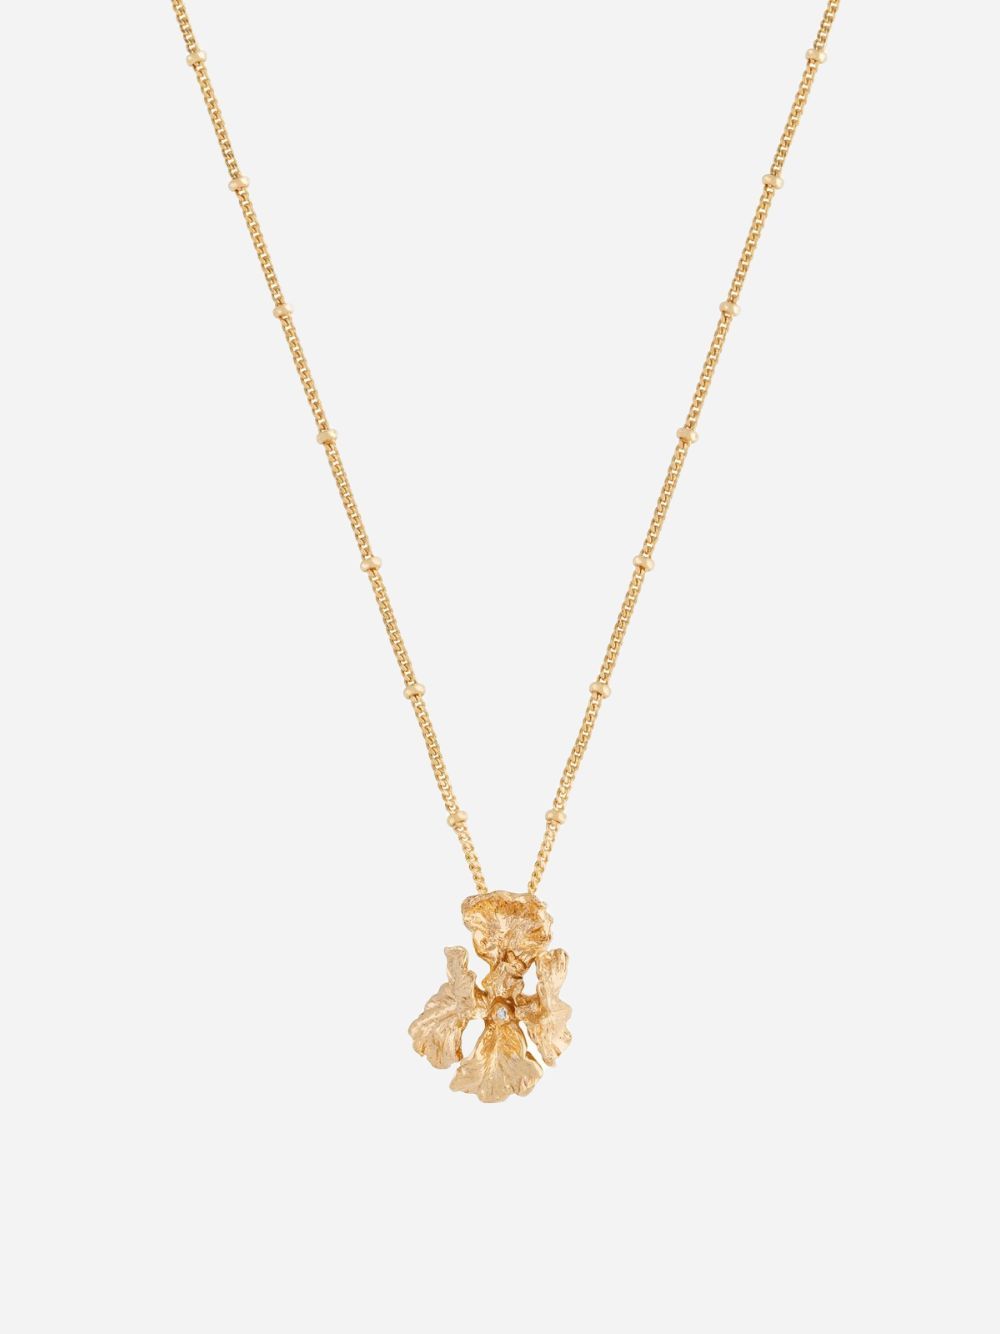 S Iris necklace